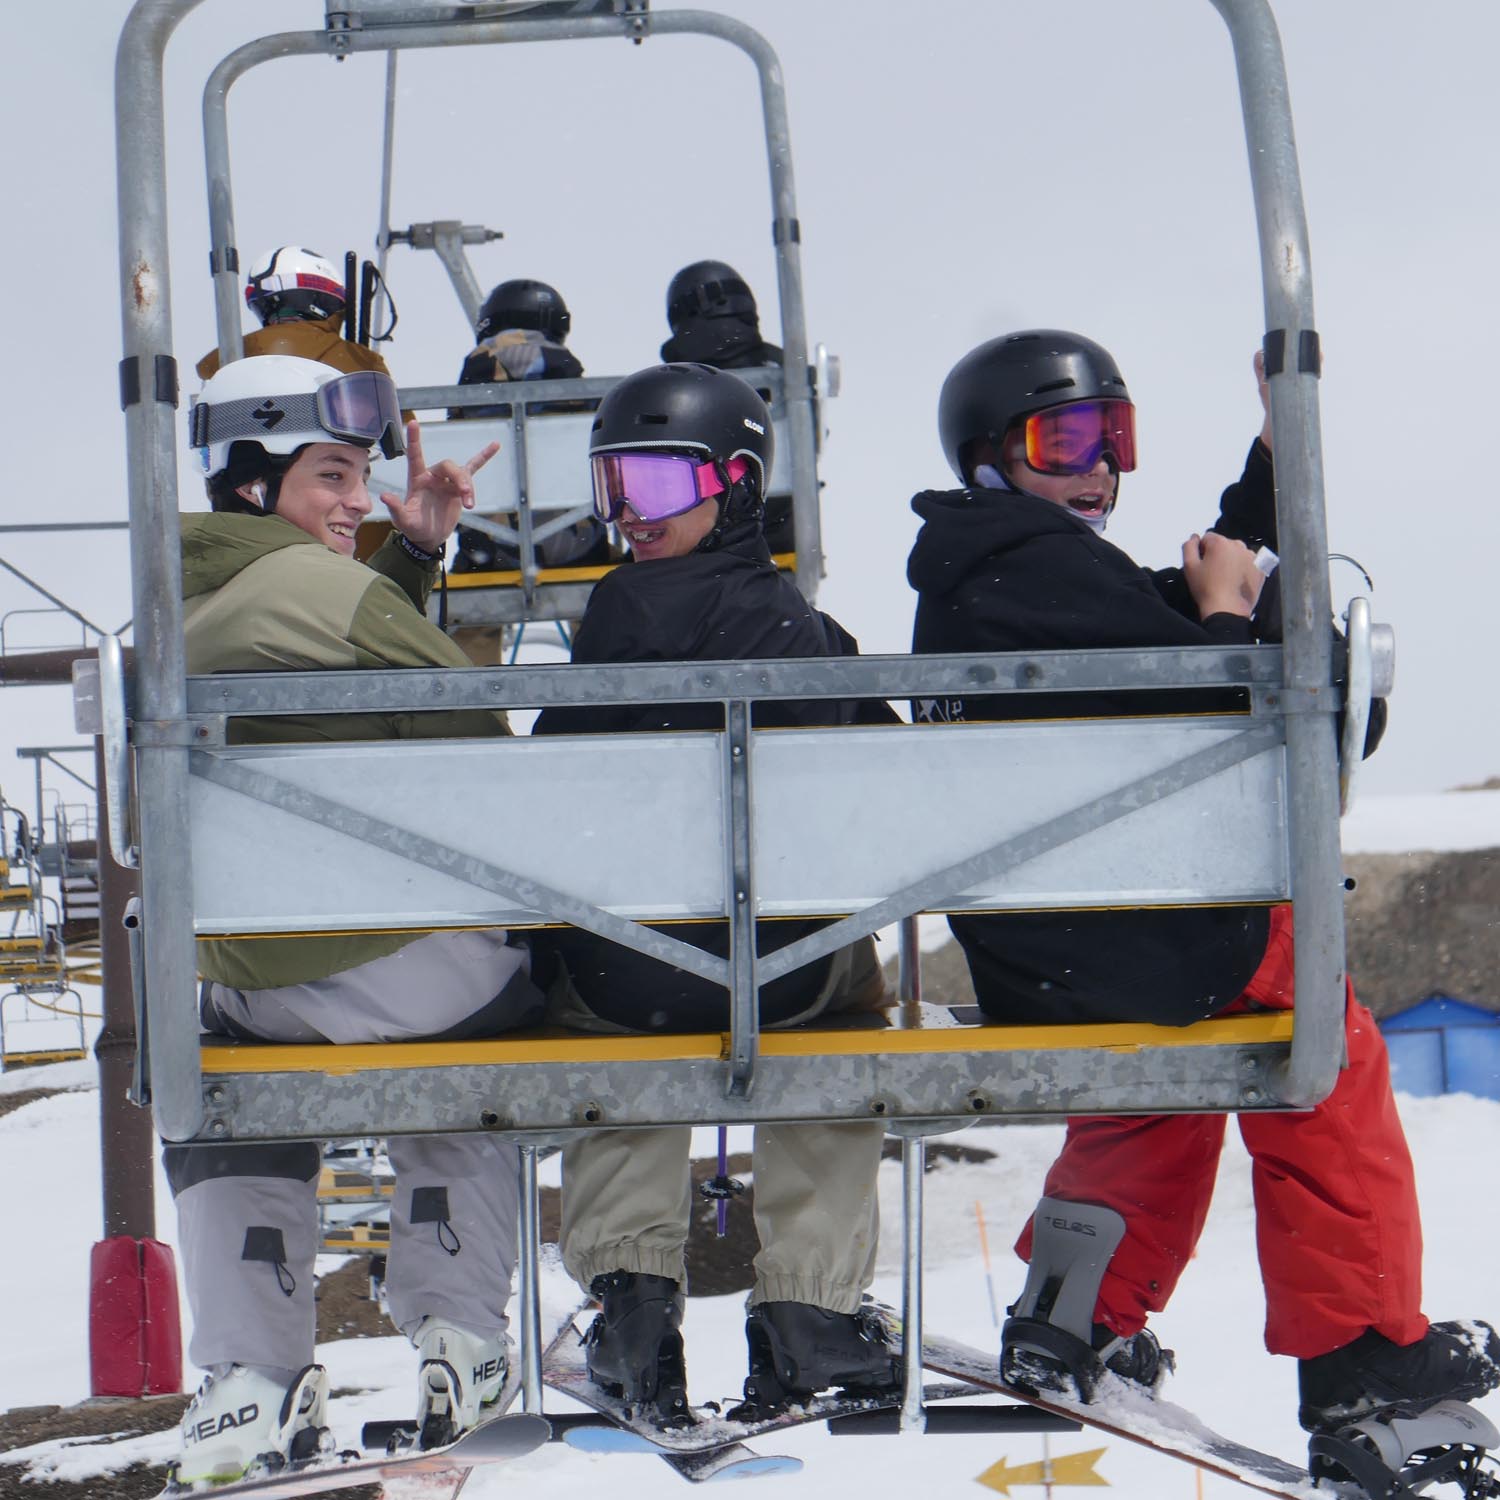 Jugendfreizeit und Slopestyle Training für Ski und Snowboard in Livigno